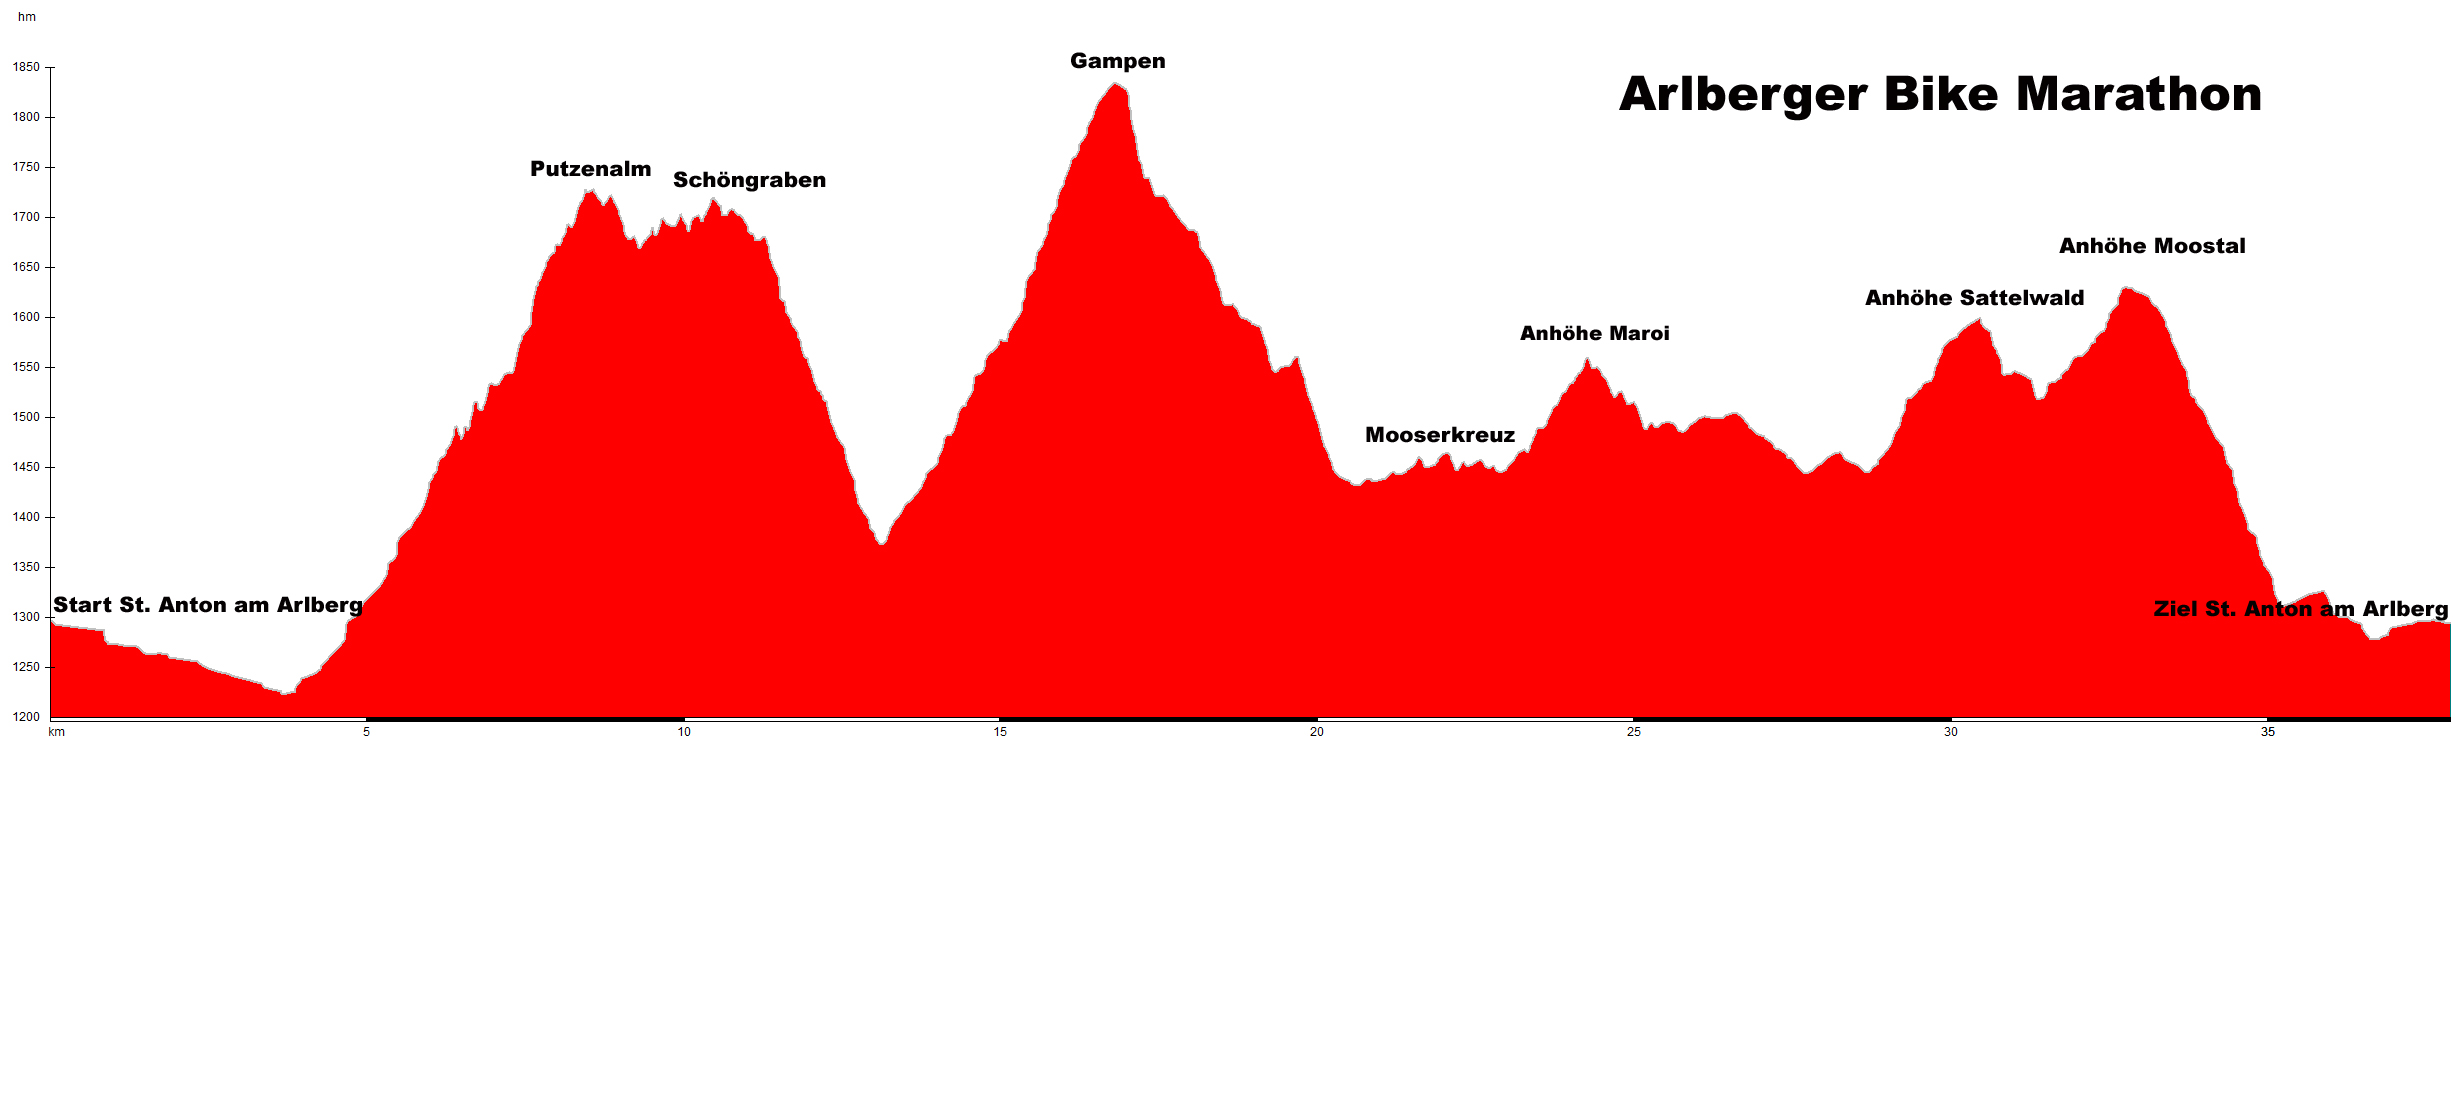 Streckenprofil des Arlberger Bike Marathon.
